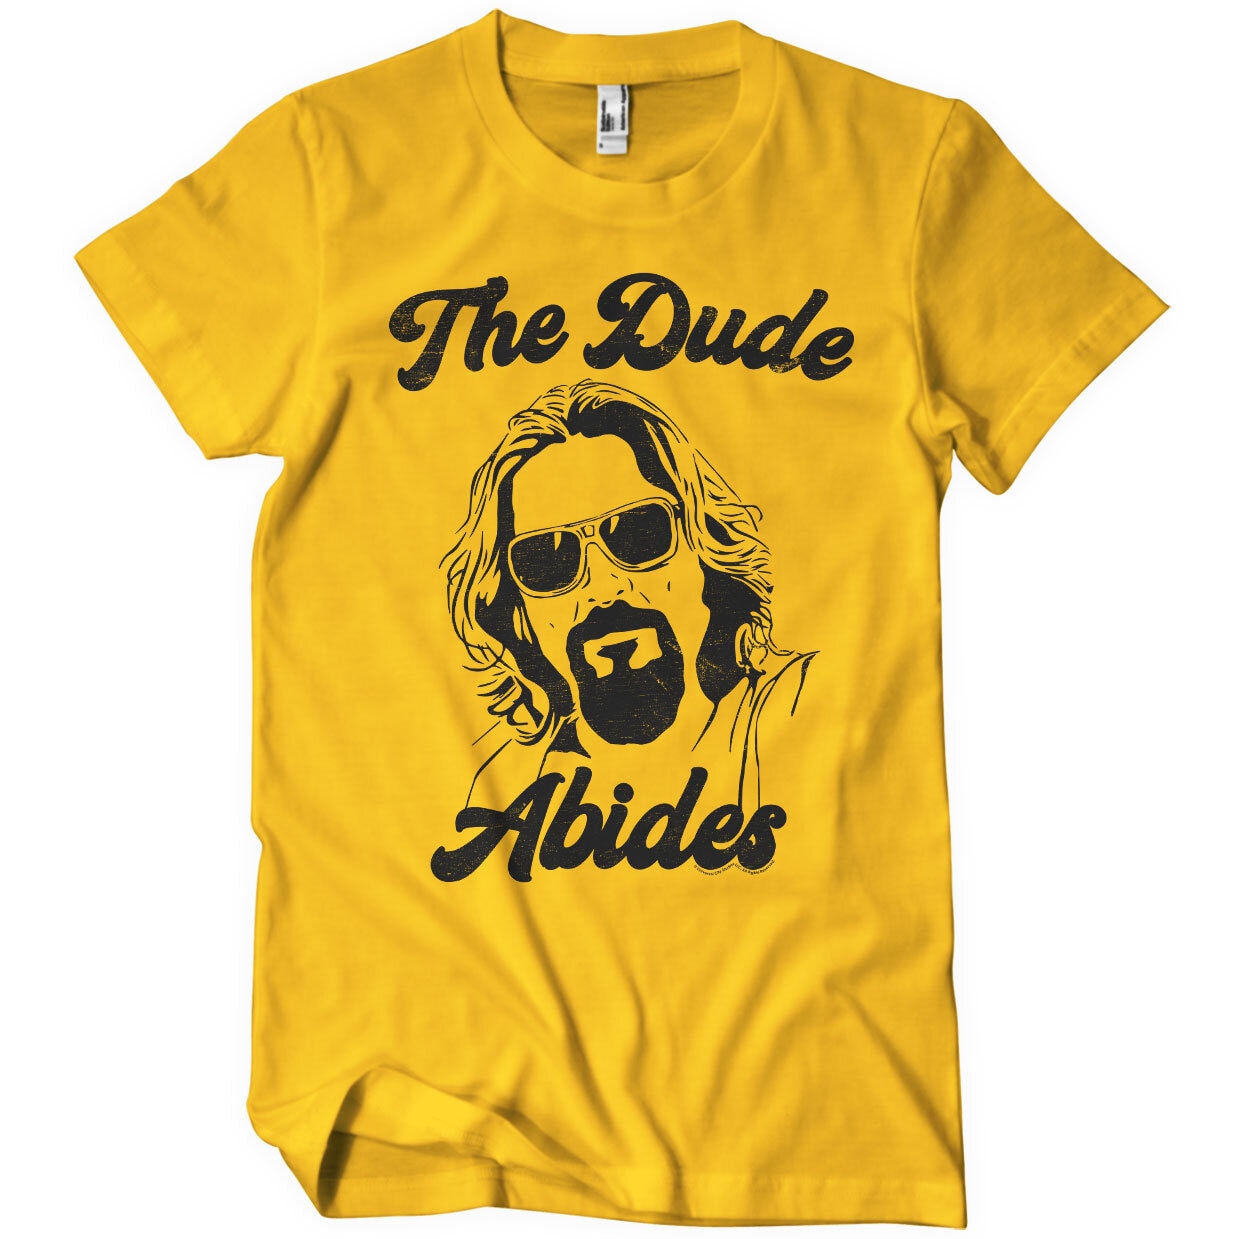 The Dude Abides T-Shirt